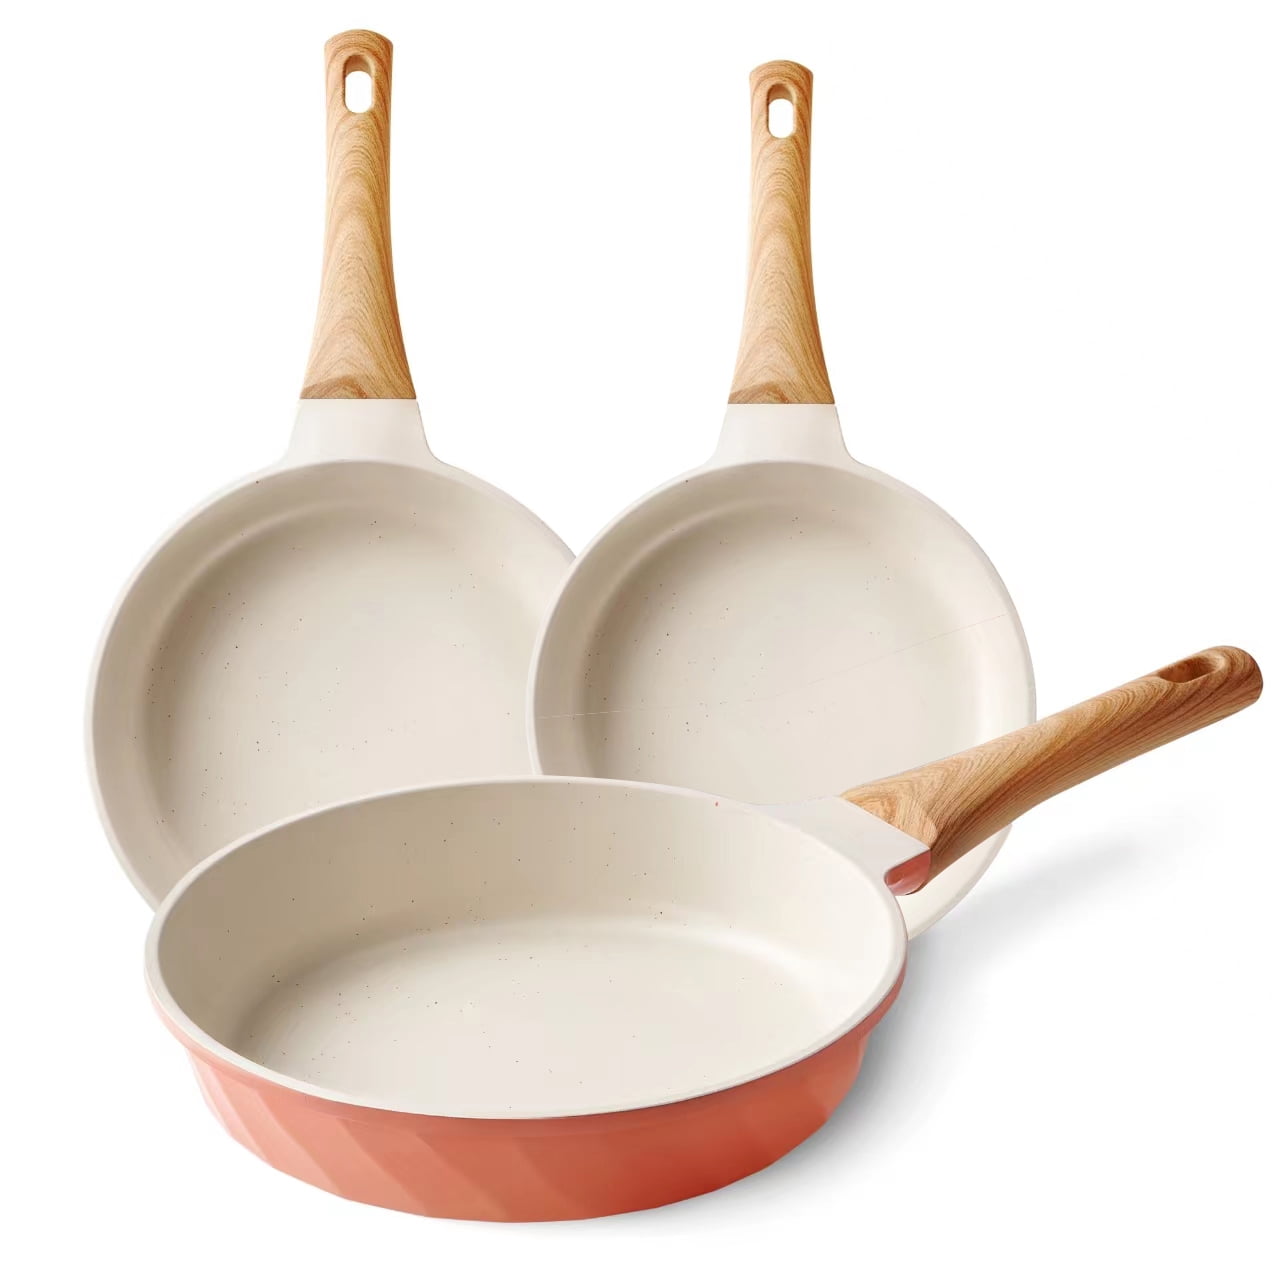 Caannasweis 5-Pieces Pots and Pans Nonstick Cookware Sets - Lightweight 